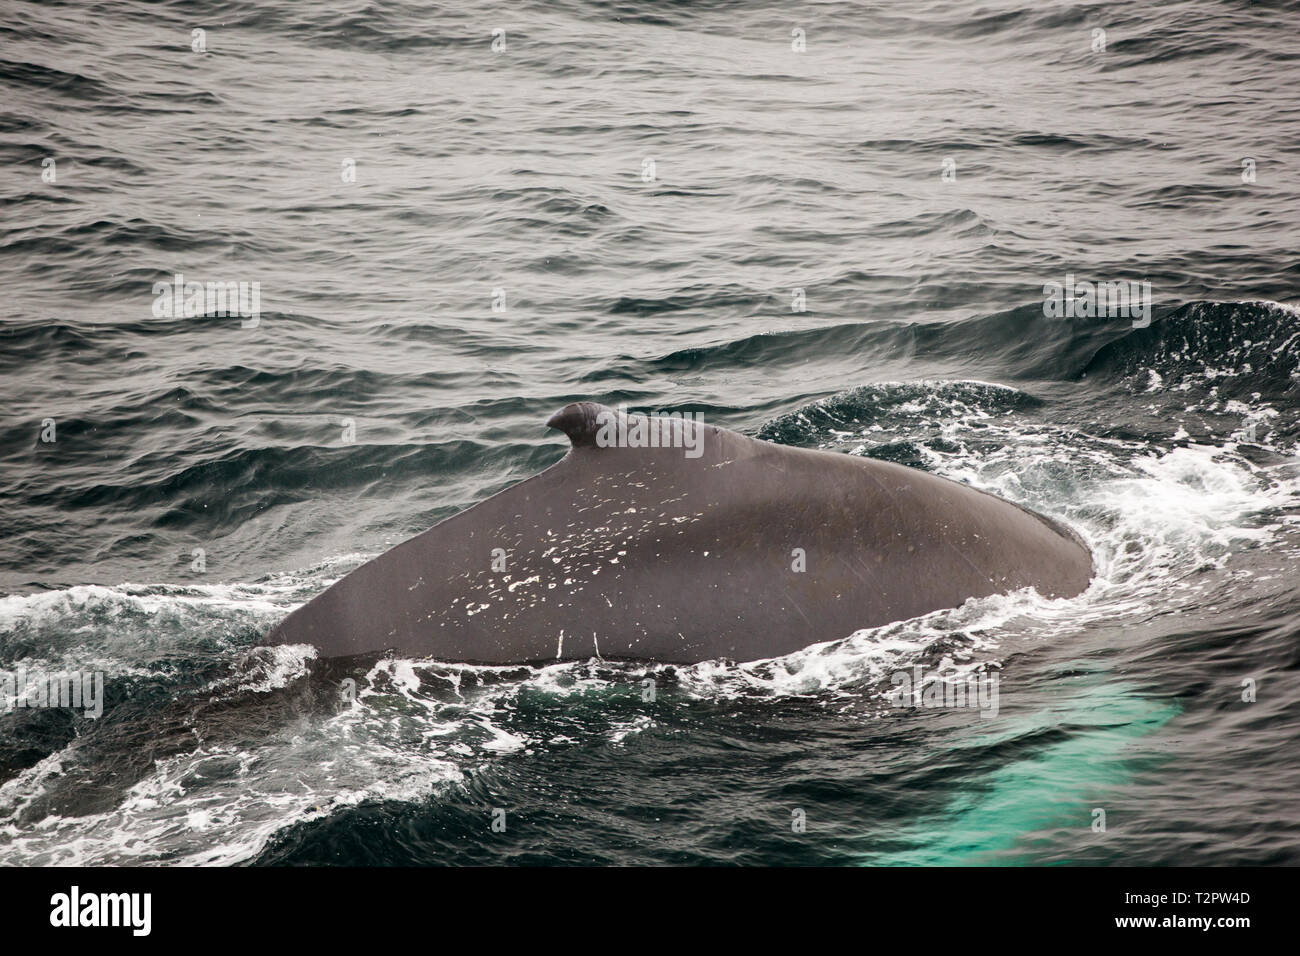 Il Humpback Whale, Megaptera novaeangliae, affiorando in stretto di Bransfield, tra il sud le isole Shetland e la penisola antartica. Foto Stock